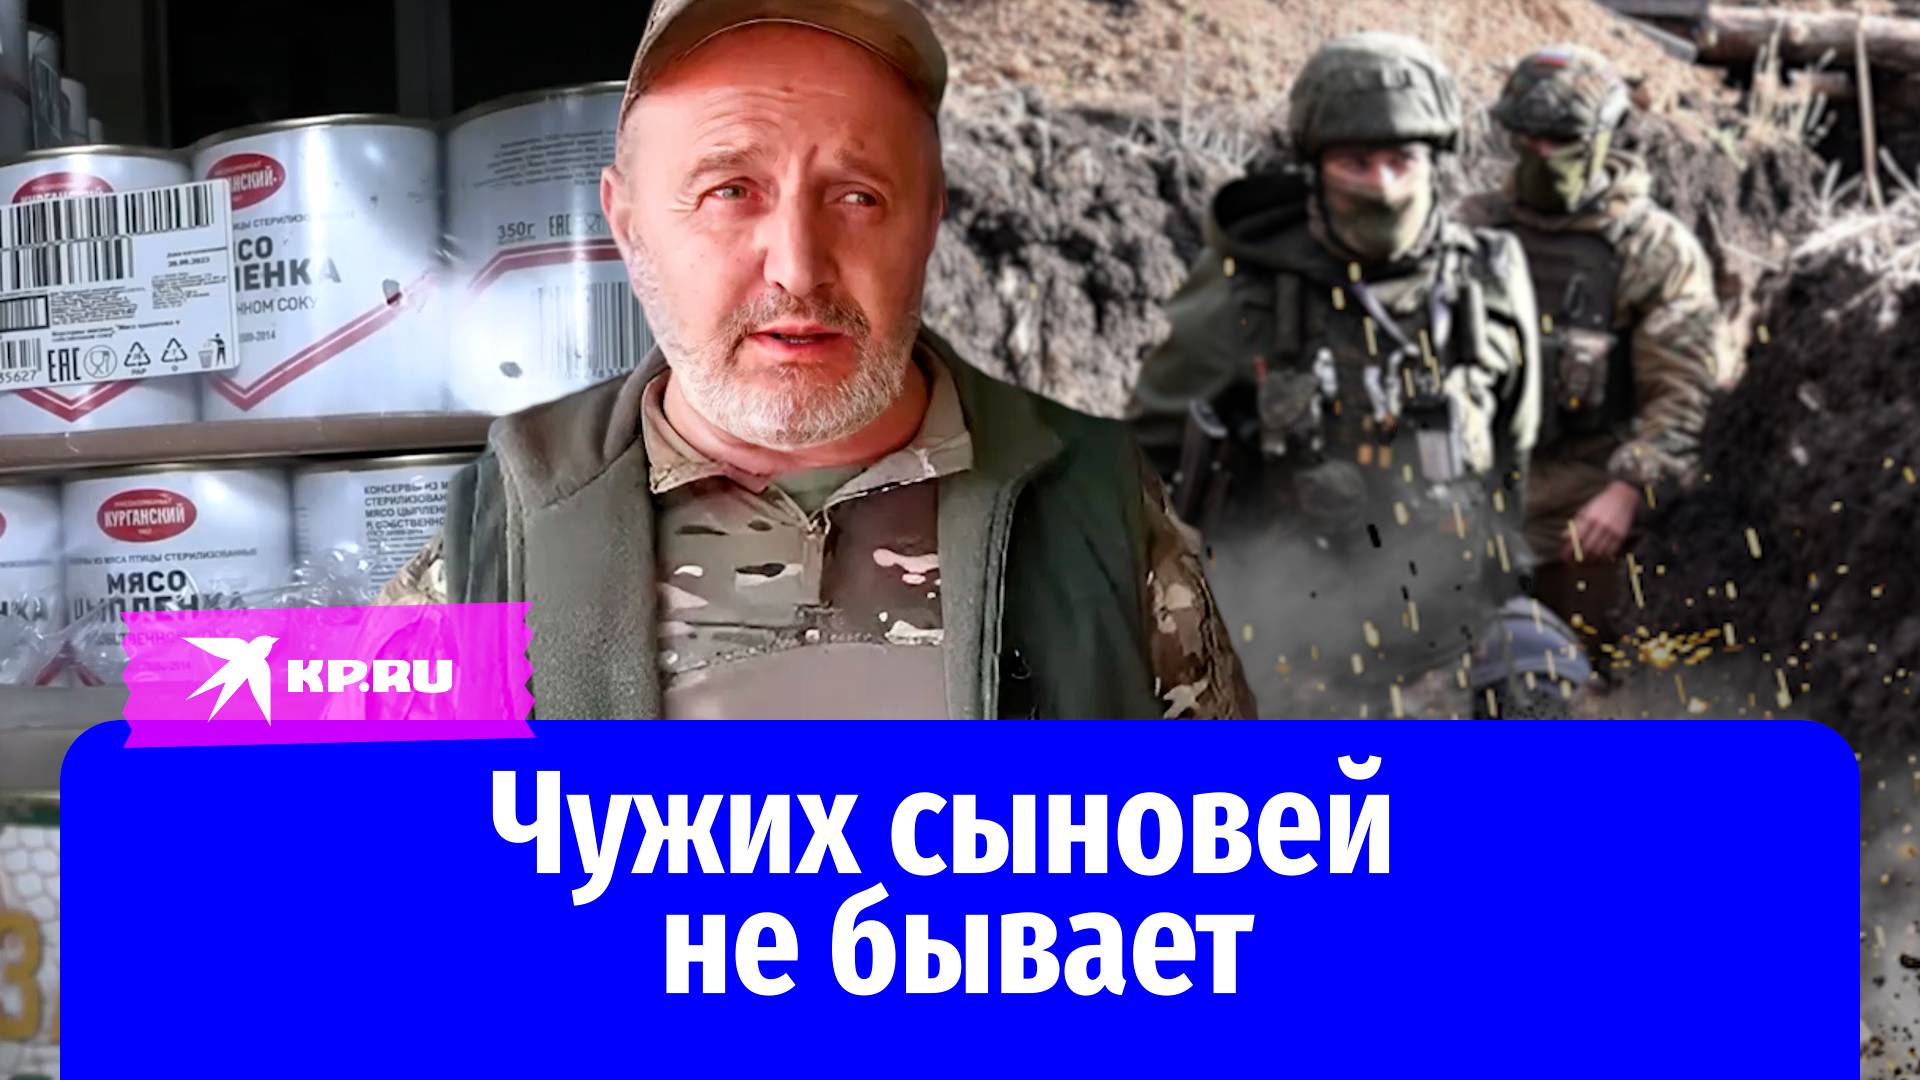 Пережив потерю родных сыновей, дагестанец стал названным отцом солдату из Екатеринбурга